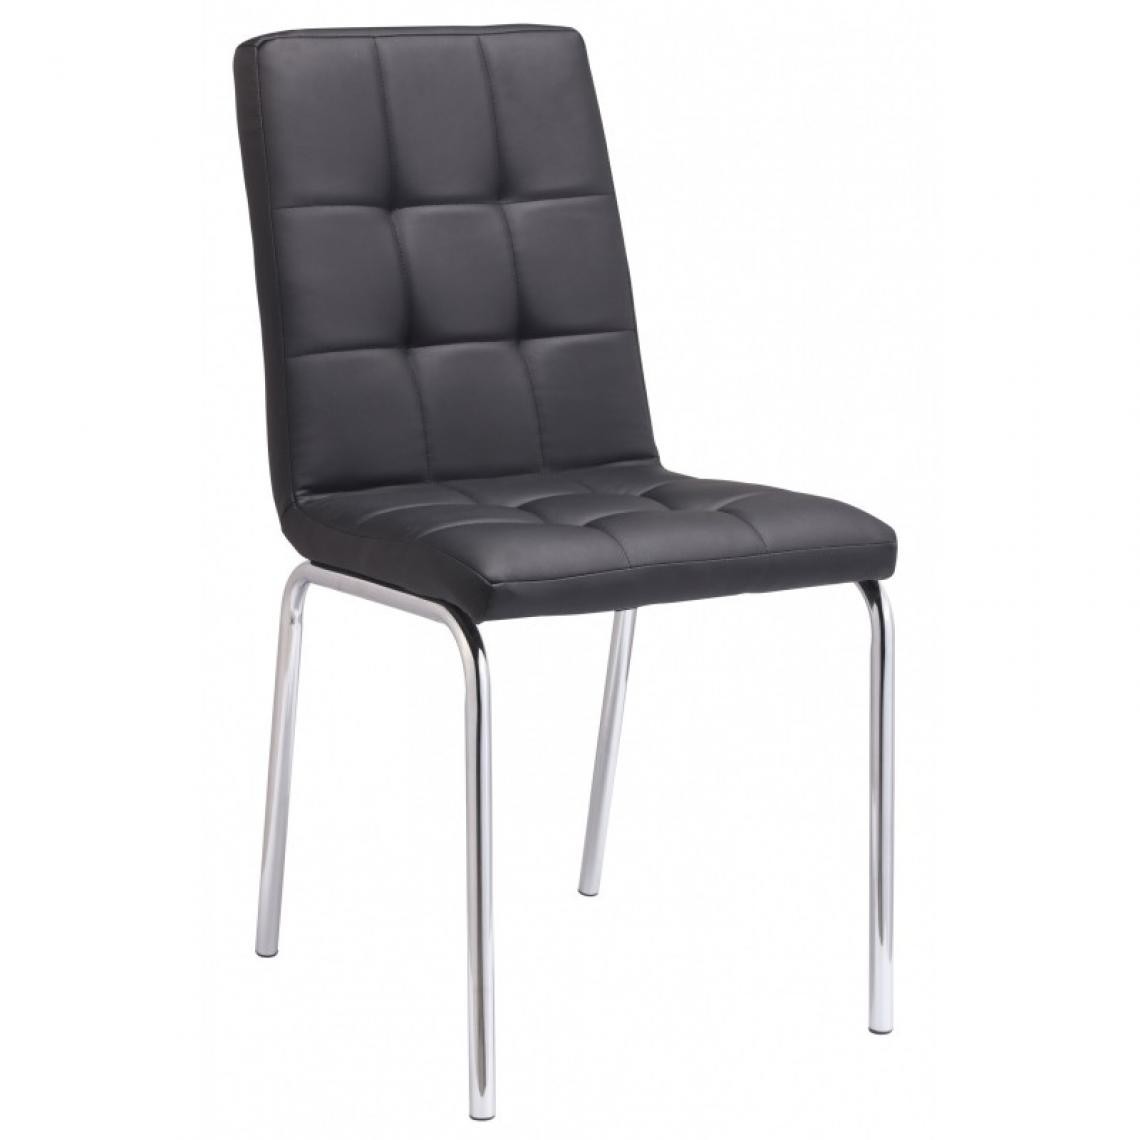 Webmarketpoint - Chaise en métal avec assise et dossier en éco-cuir noir 43x57xh. 87cm - Chaises